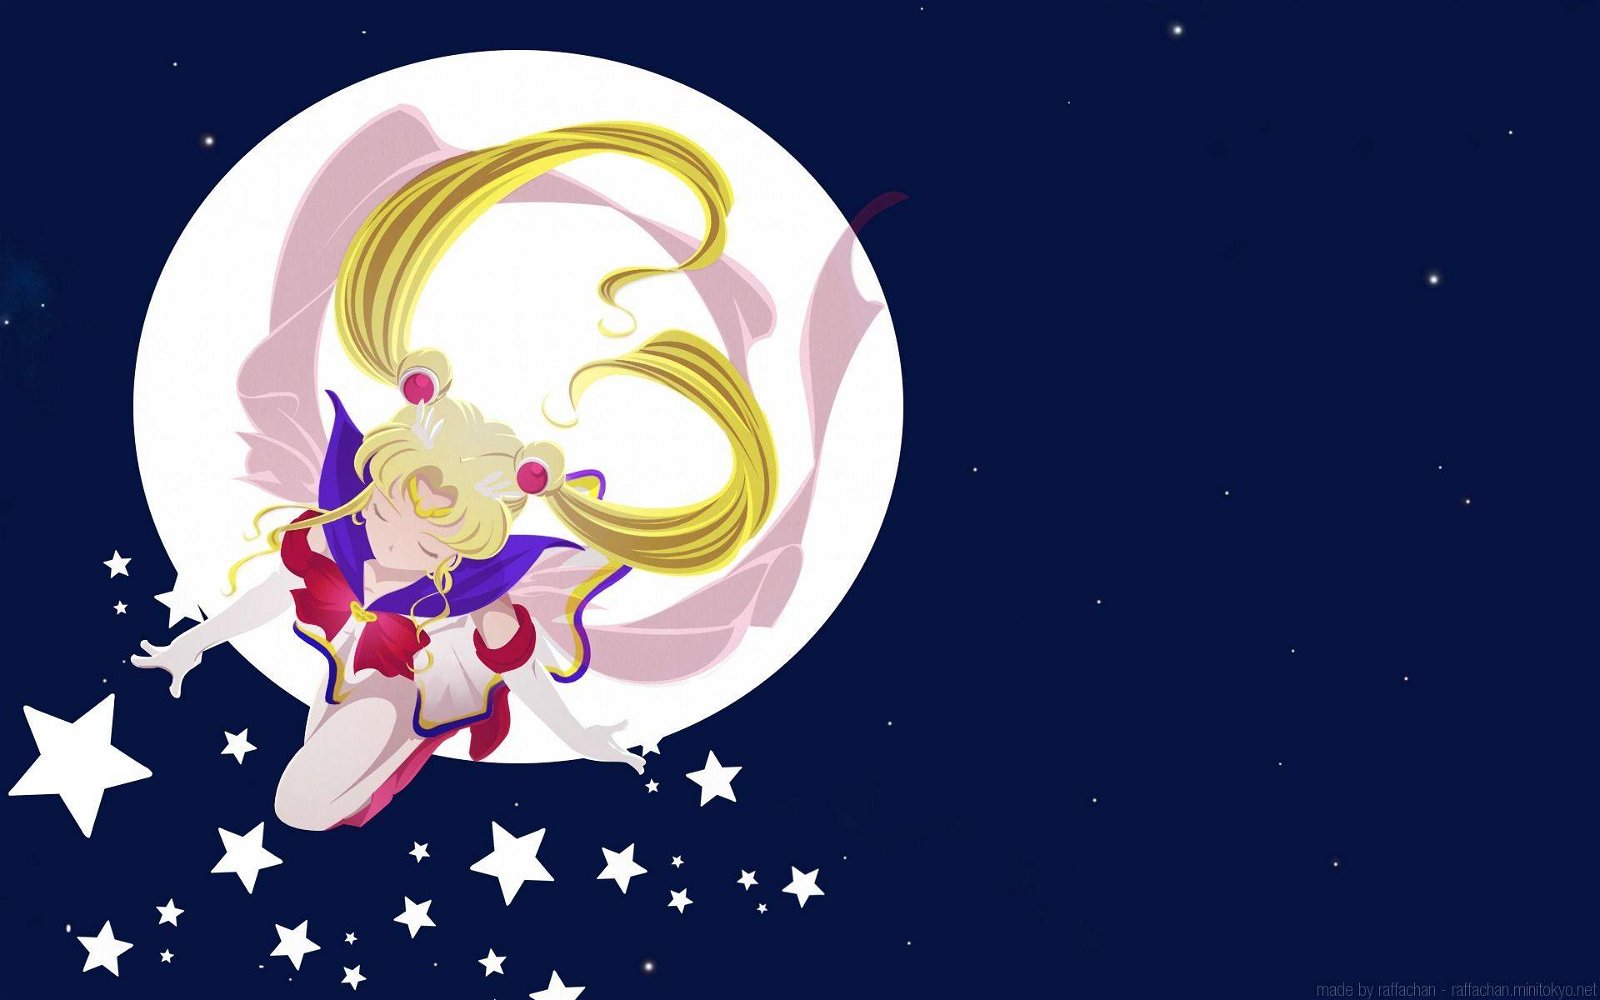 Immagine di Sailor Moon avrà una mostra a Torino per i suoi 25 anni in Italia